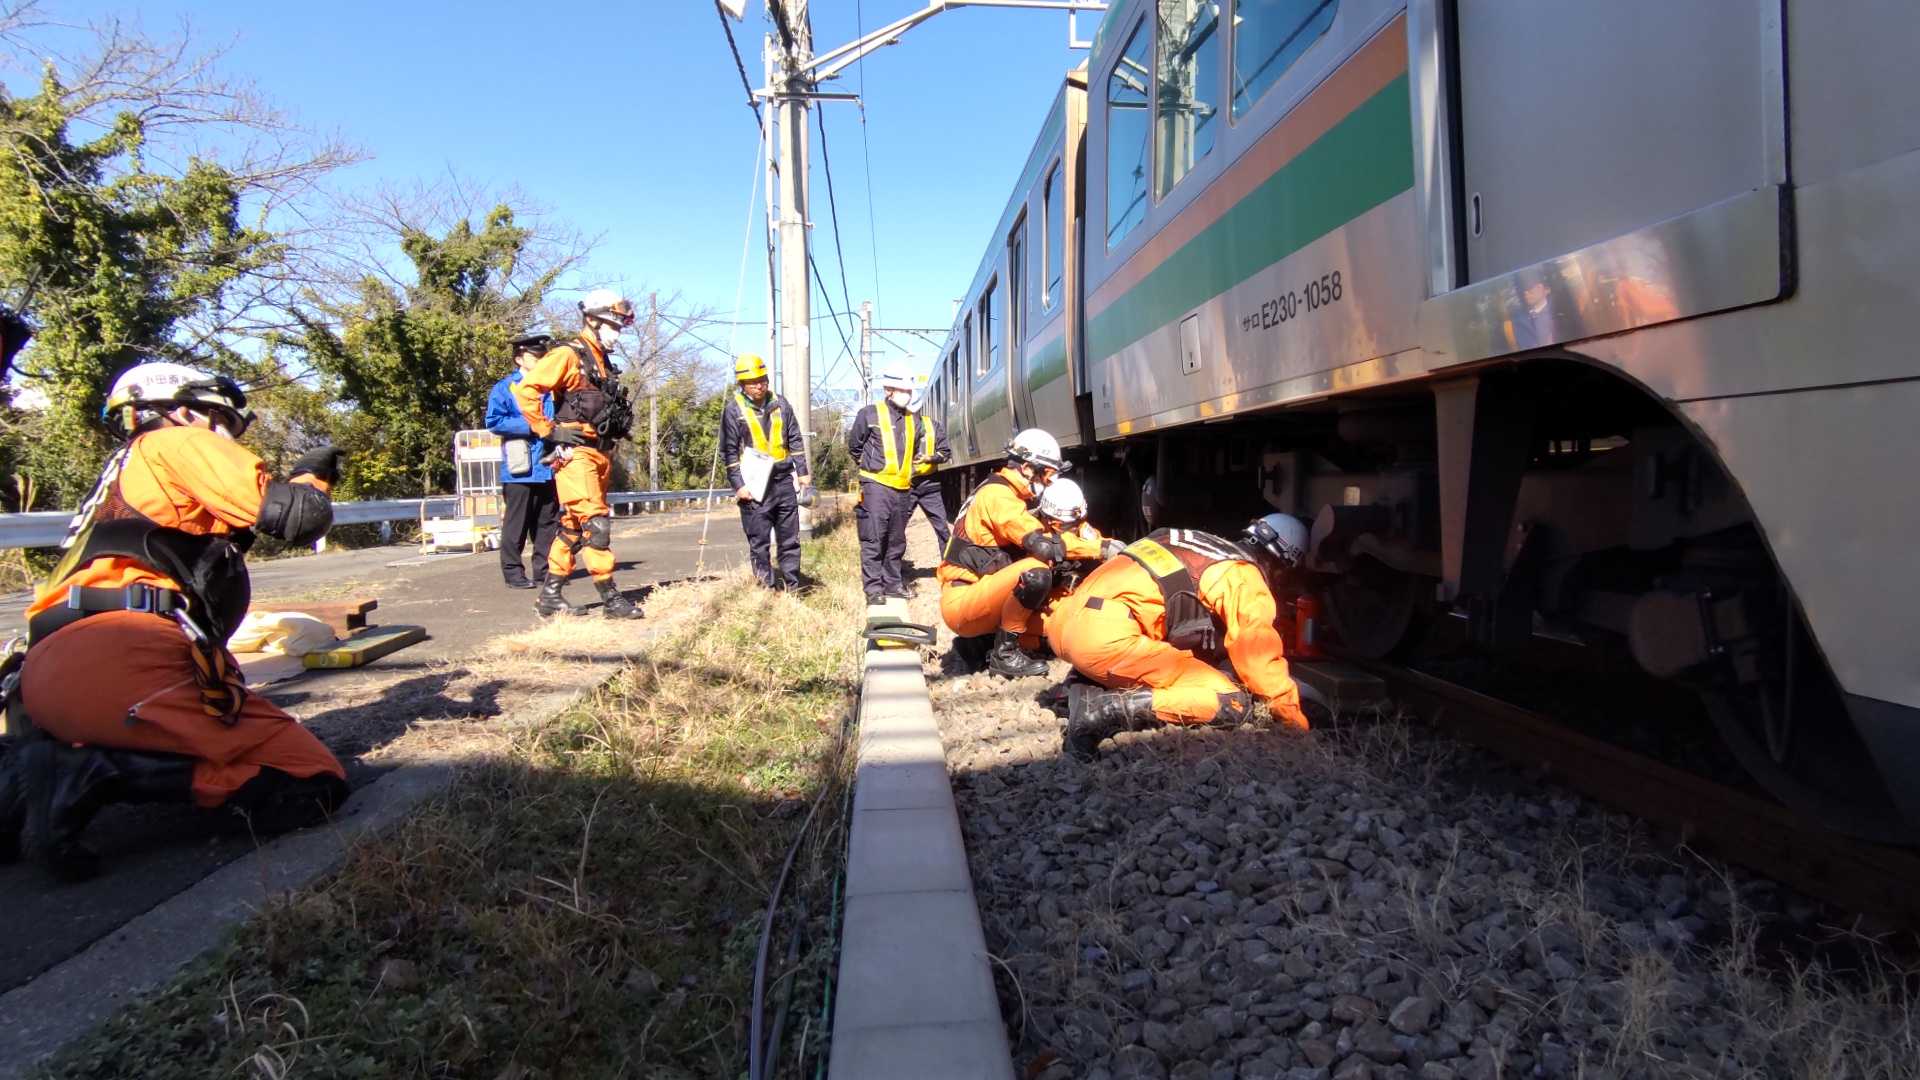 列車の下敷きになった要救助者を救出するため、JR職員の助言を得ながら、ジャッキアップポイント等を確認している写真。